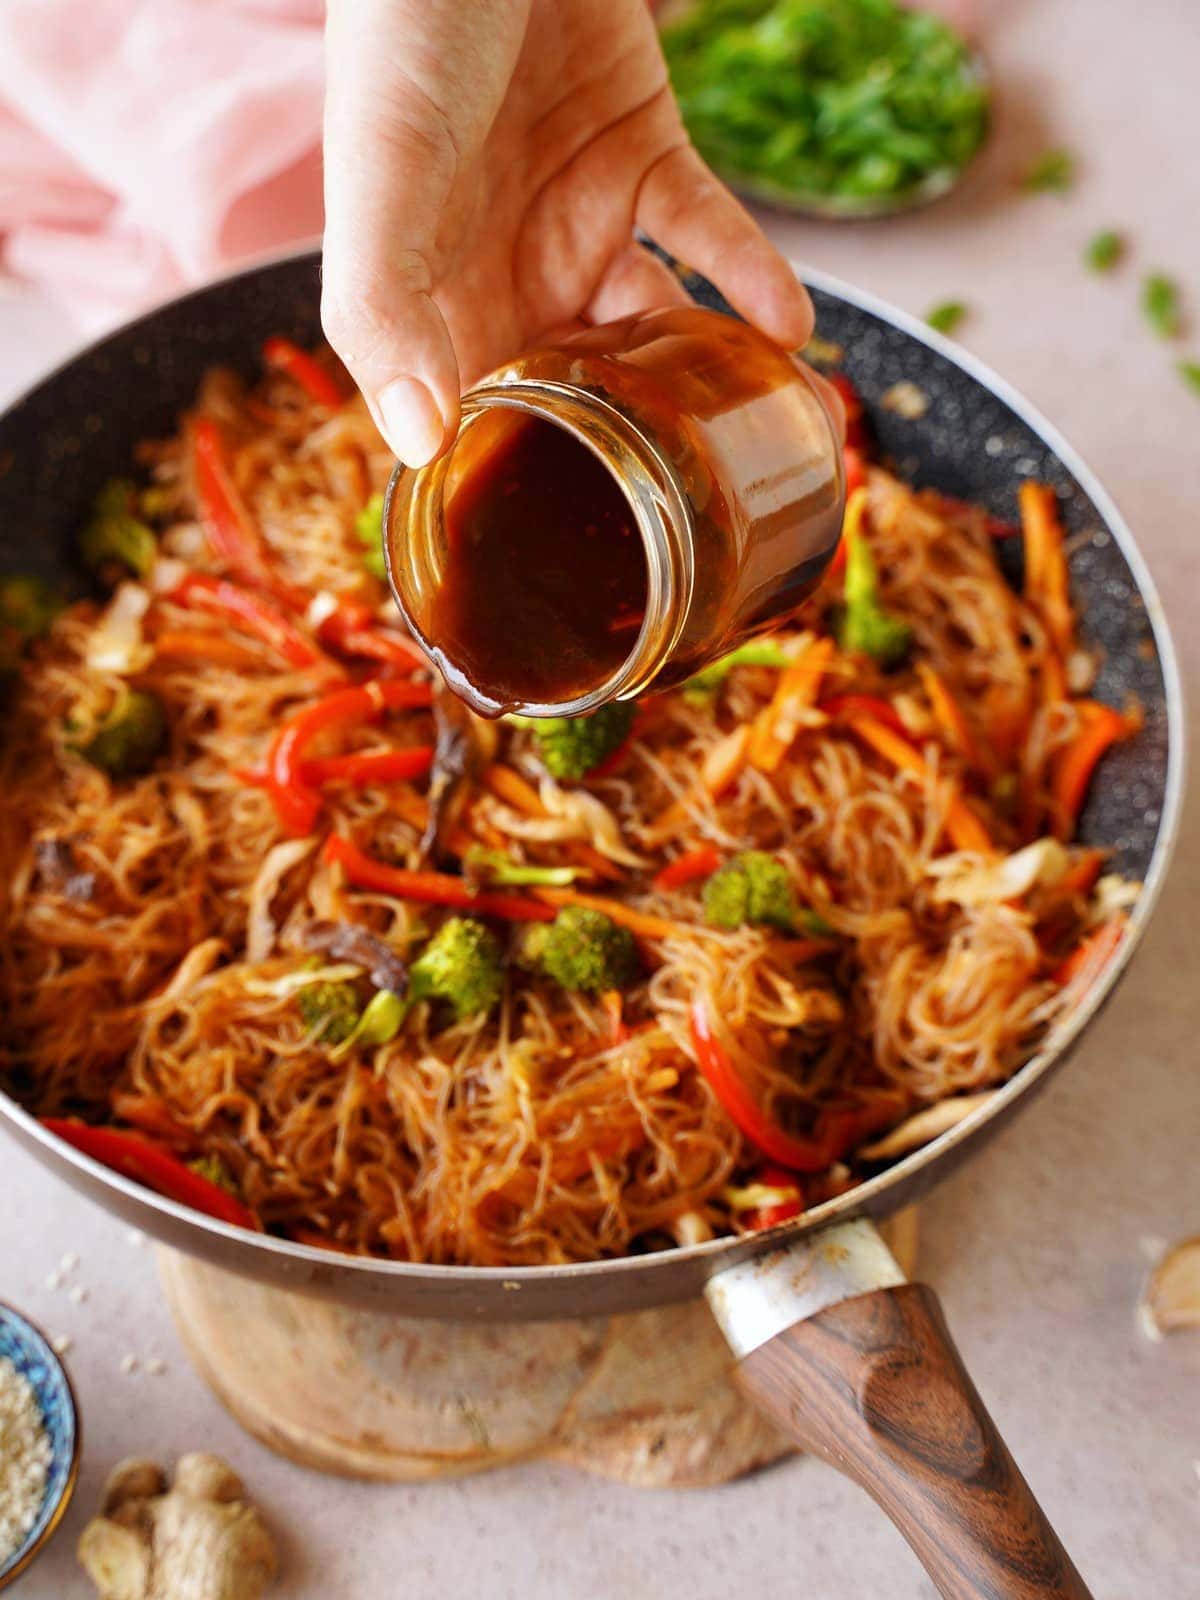 Asiatische Sauce wird über Stir-Fry Nudeln mit Gemüse geträufelt